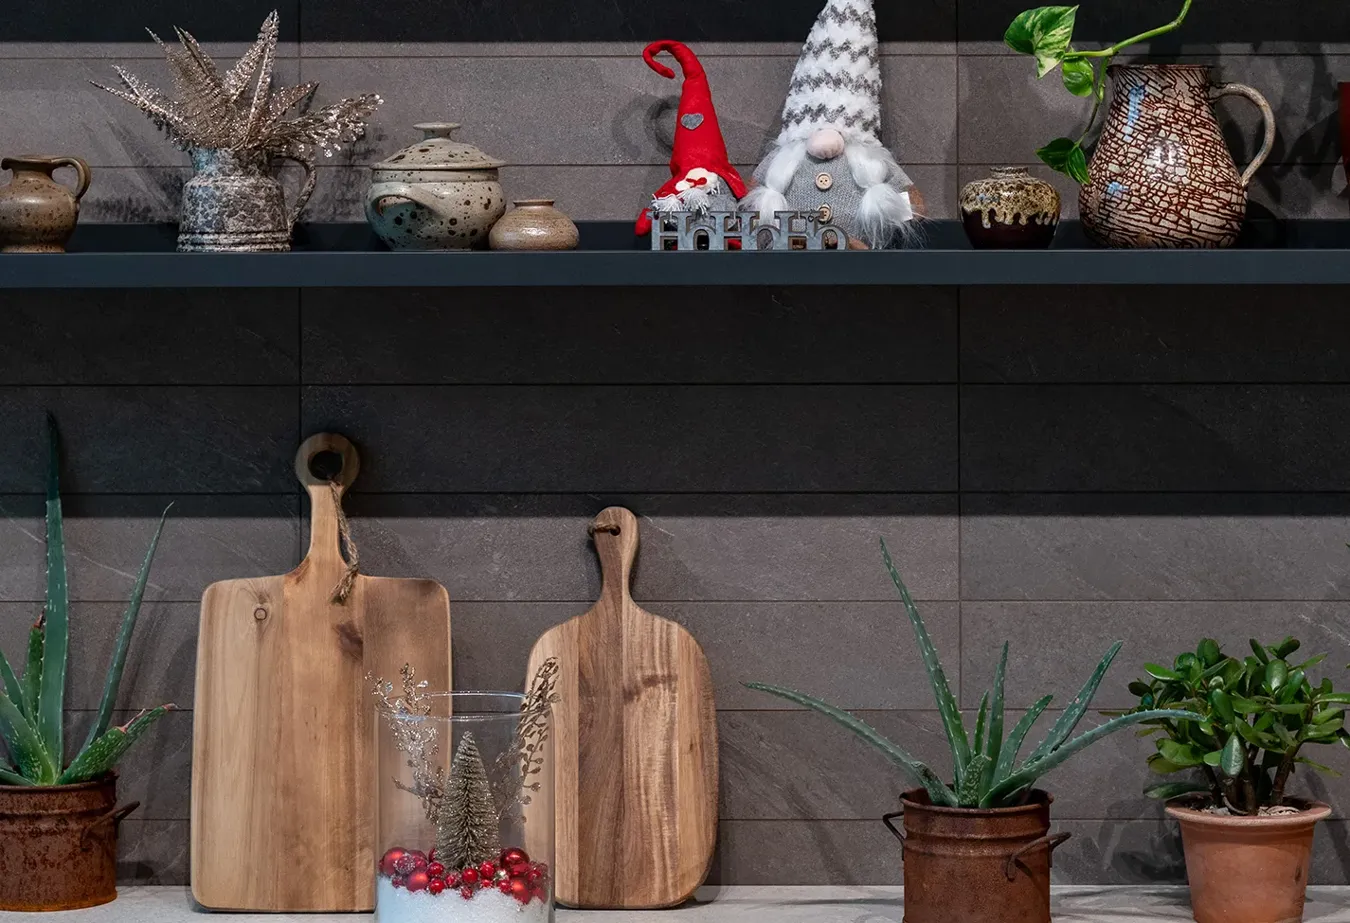 Gemütliche Küche mit Brystone-Fliesen, traditionellem Weihnachtsschmuck und natürlichen Holzaccessoires.